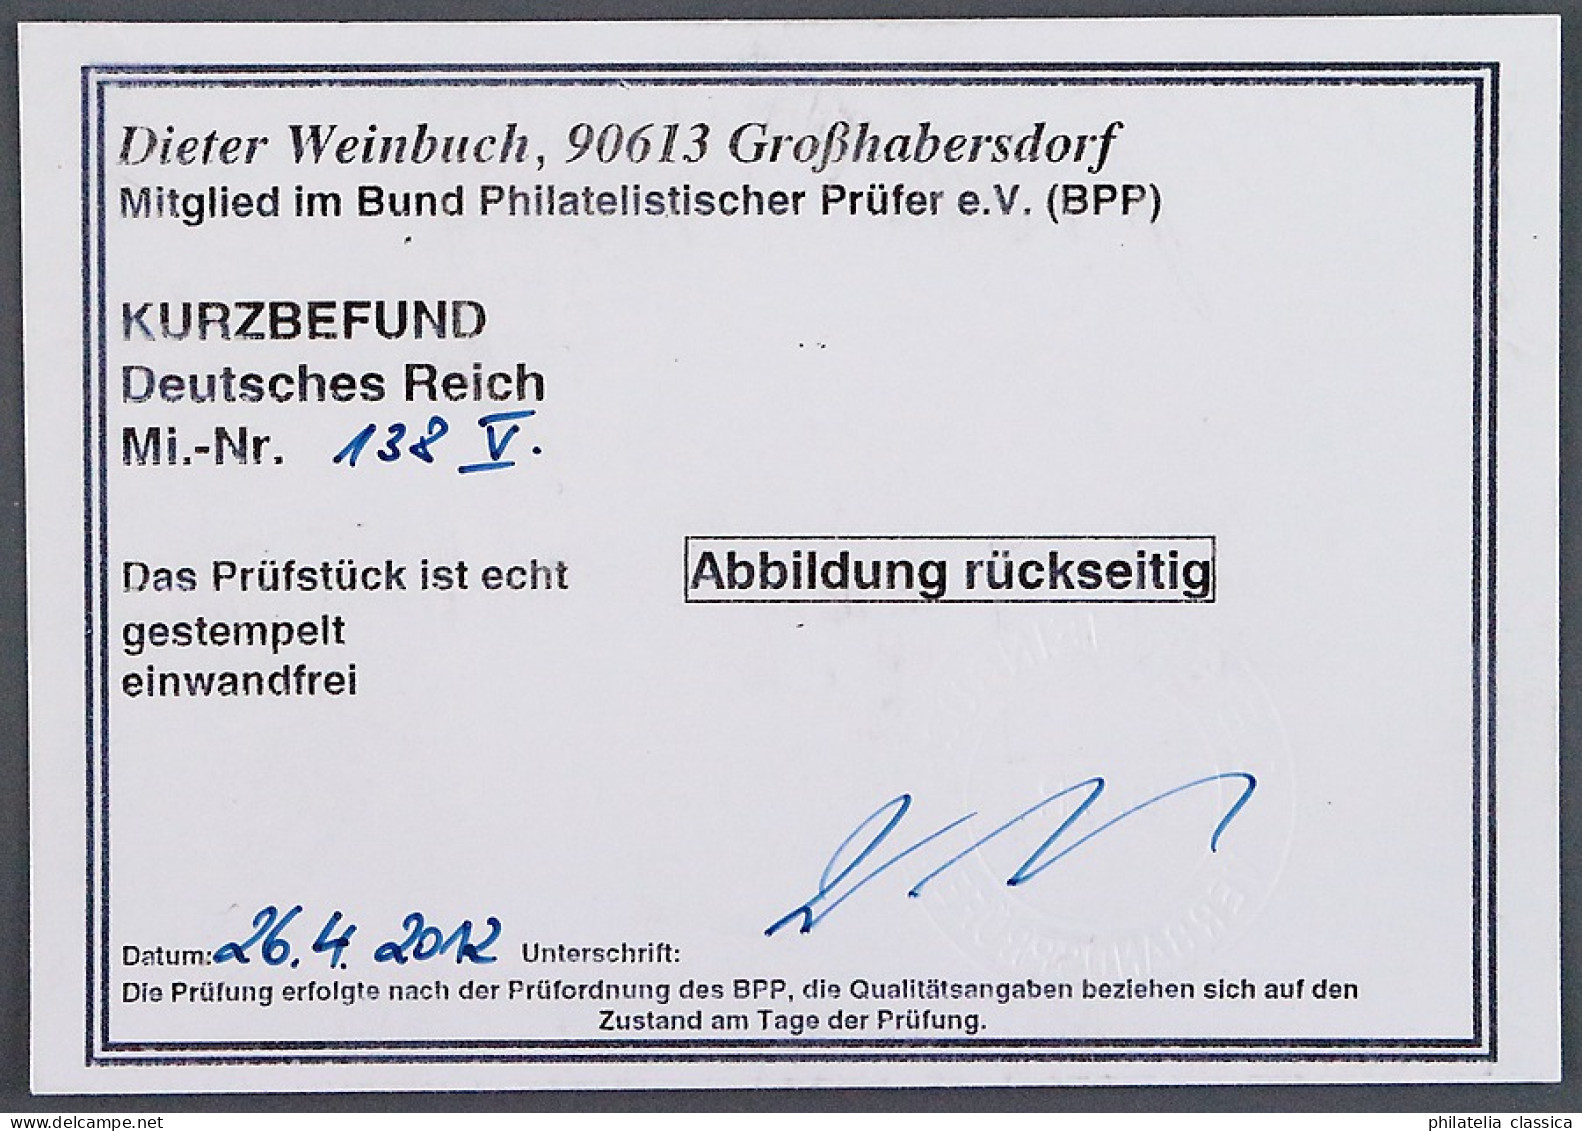 Dt. Reich  138 PF V,  PLATTENFEHLER  "Apostroph", Gestempelt, Geprüft KW 200,- € - Usati